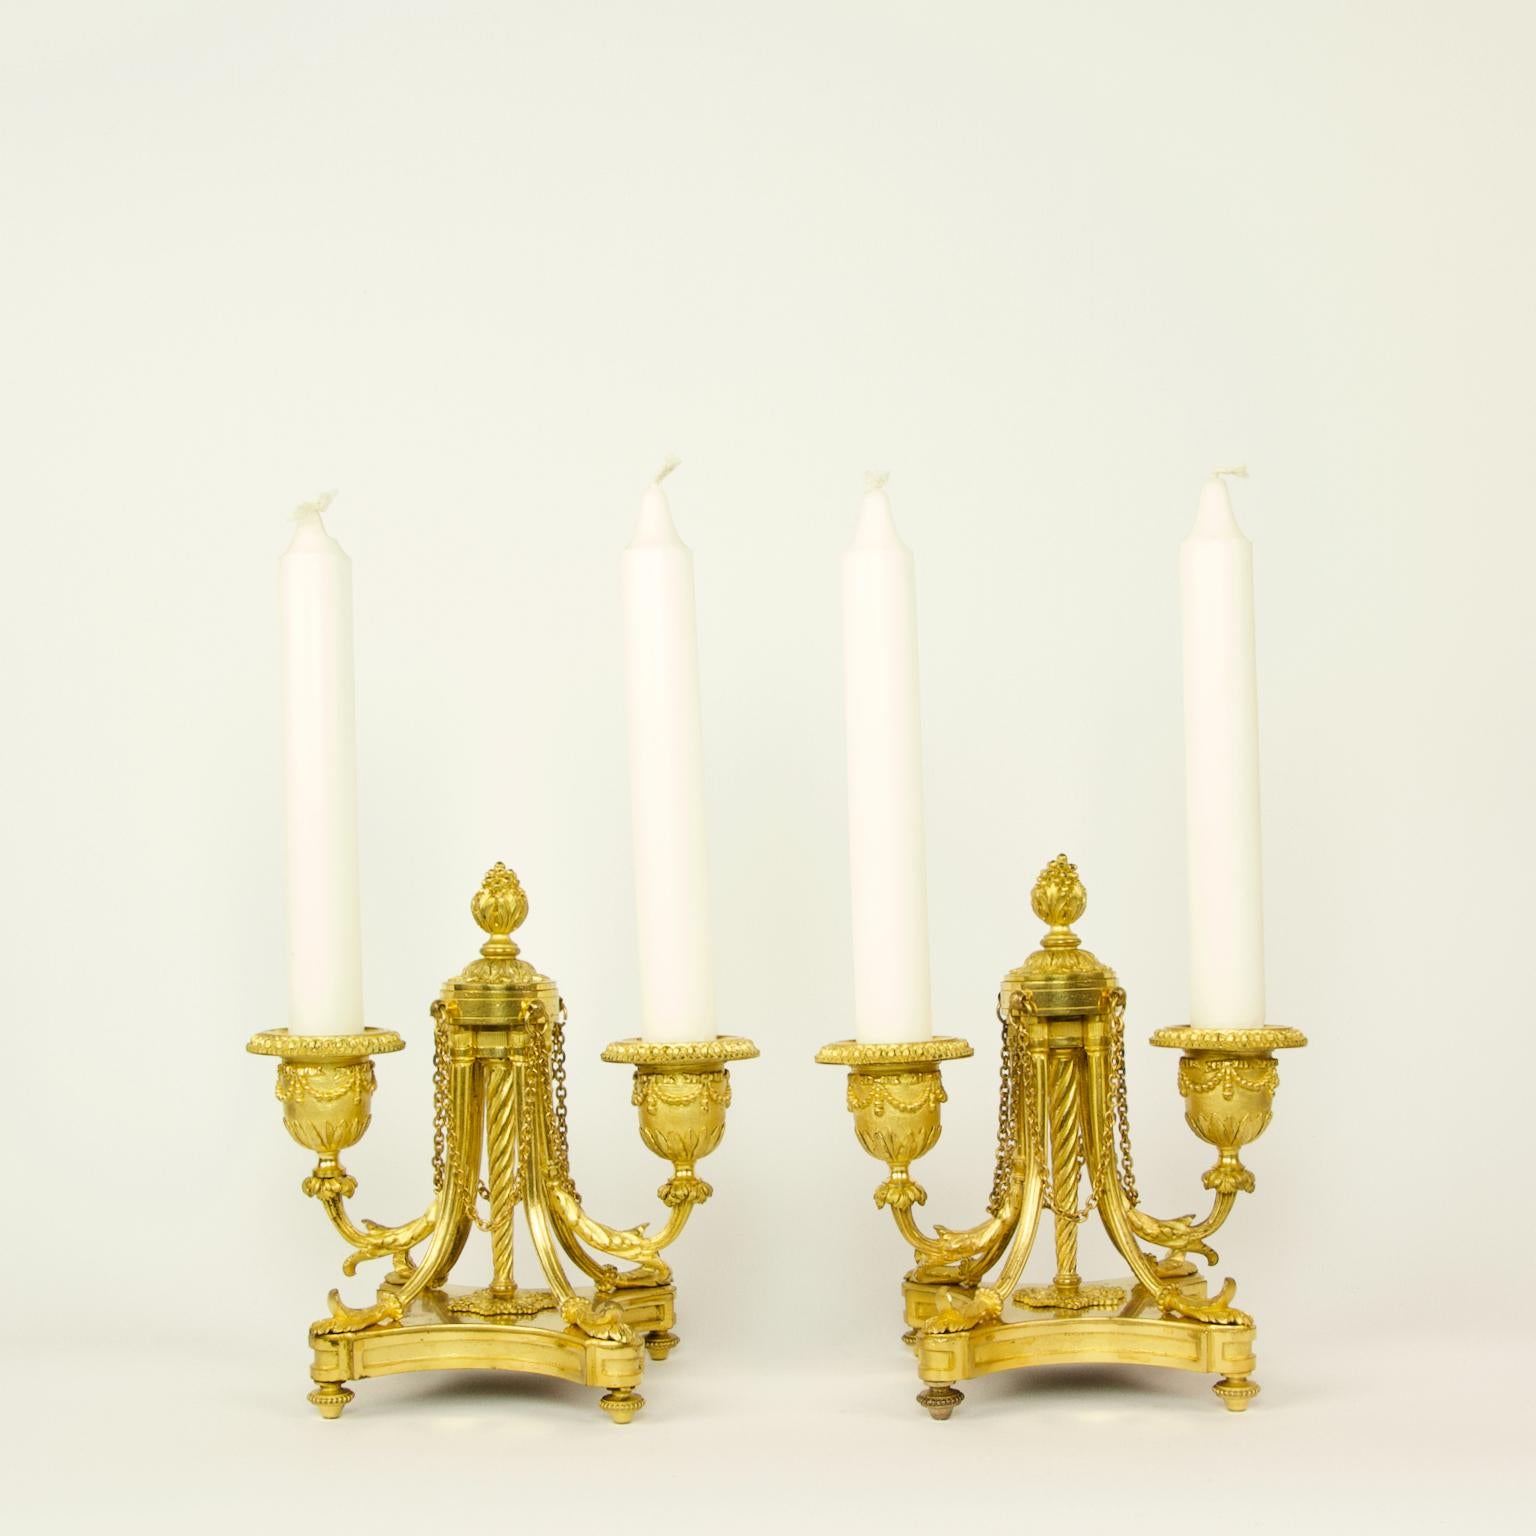 Zwei kleine französische Kandelaber aus vergoldeter Bronze im Stil Louis XVI des 19. Jahrhunderts/Napoleon III

Jeder Kandelaber verfügt über zwei kannelierte Lichtarme mit Laubdekoration und glockenförmigen Düsen oder Bobeches. Die leichten Arme